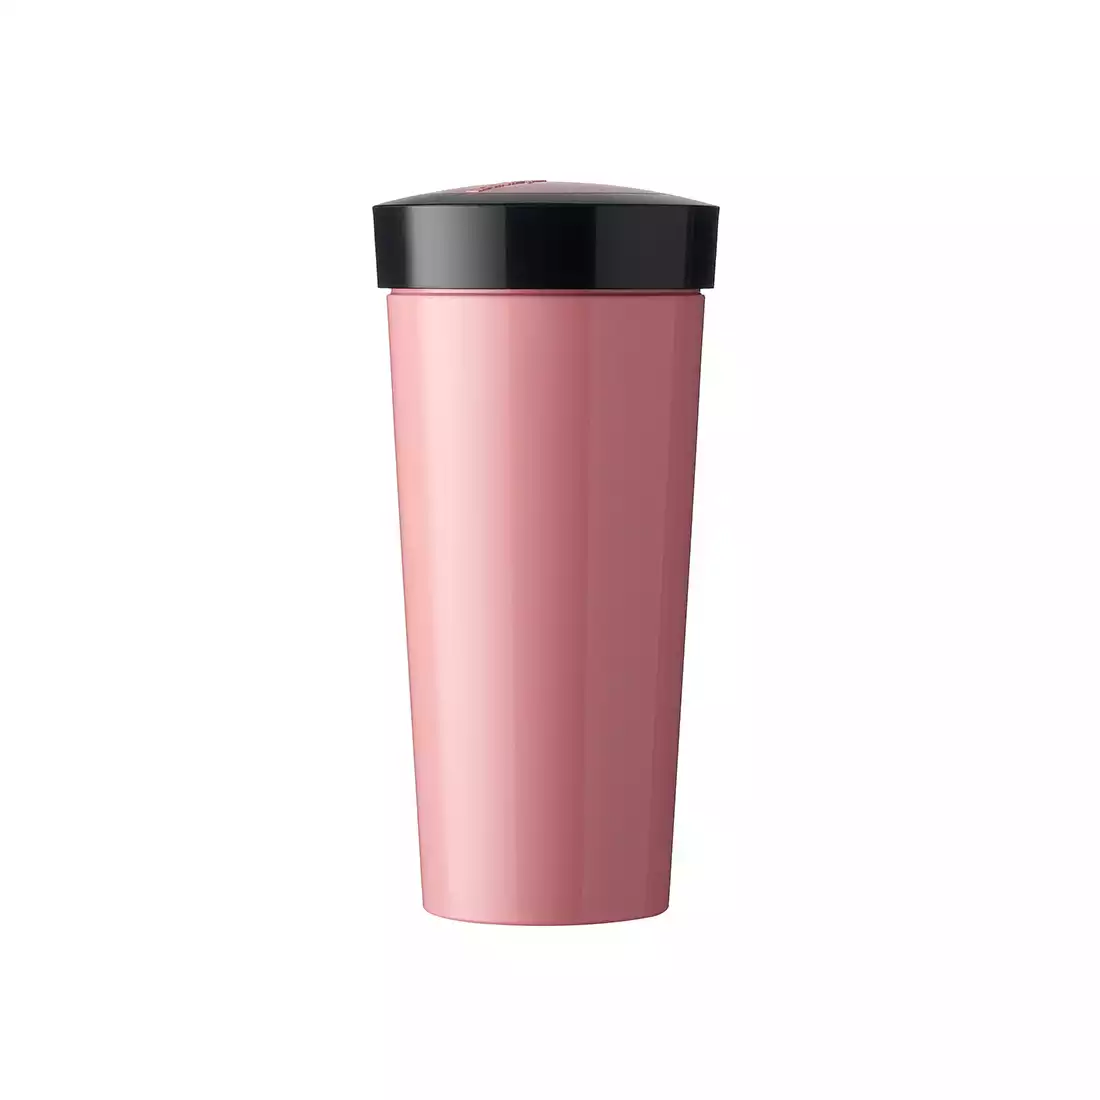 MEPAL TAKE A BREAK thermal mug 400 ml, nordic pink